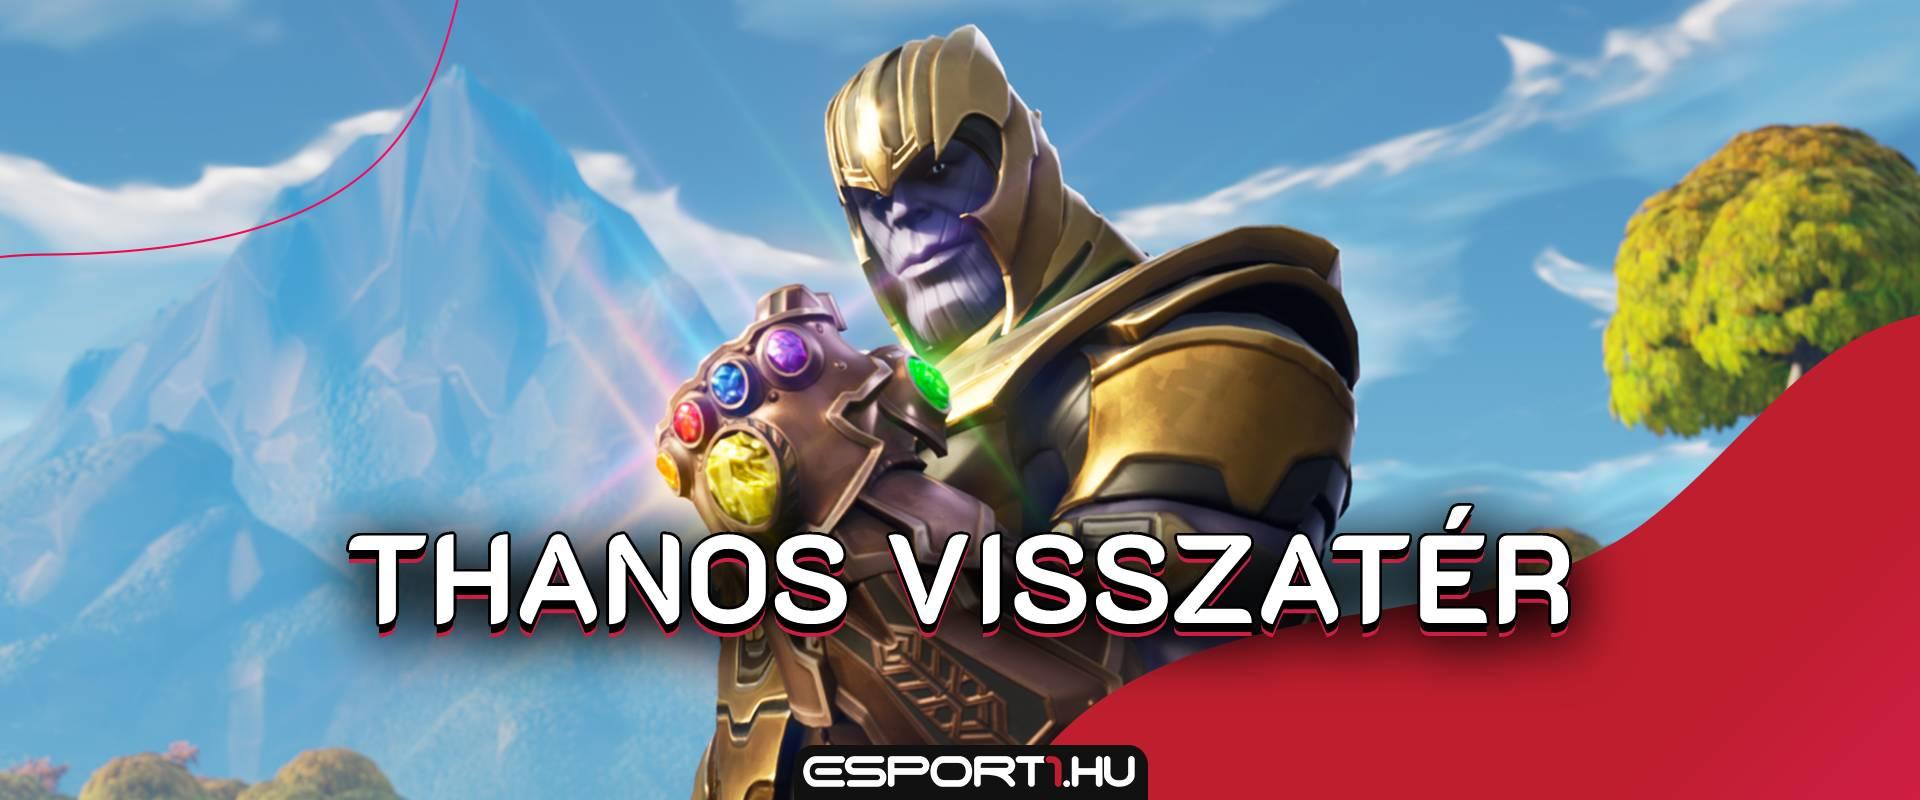 Thanos végre igazi skinné válik a Fortnite-ban, még kupát is rendeznek neki